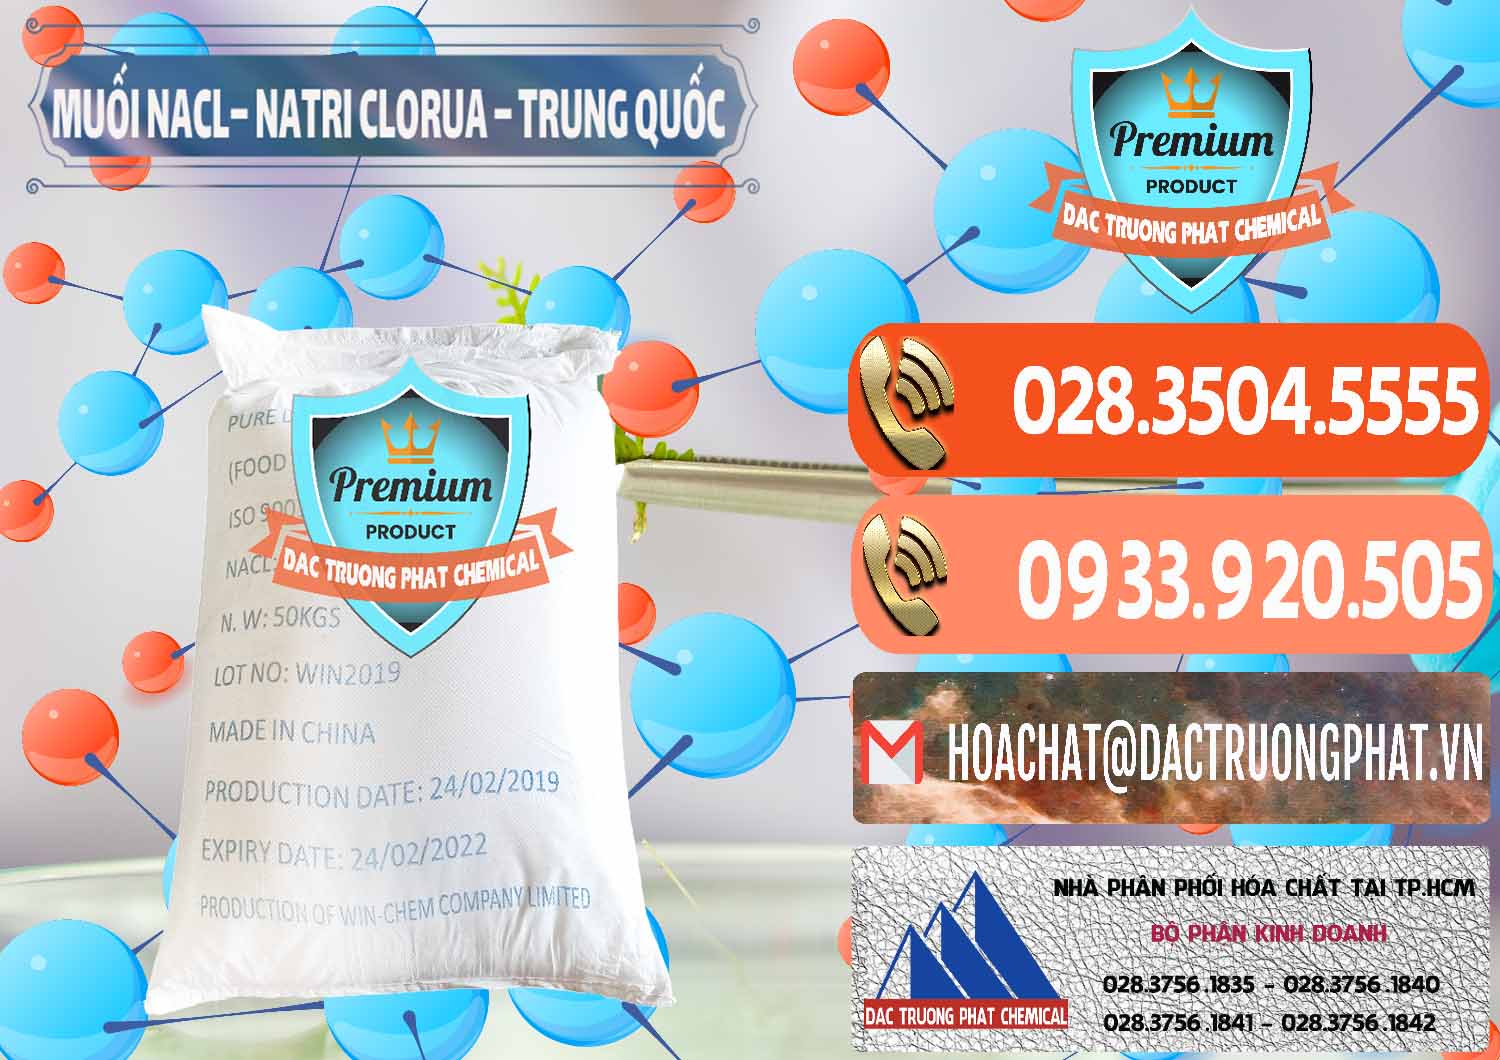 Nơi chuyên kinh doanh & bán Muối NaCL – Sodium Chloride Trung Quốc China - 0097 - Cty chuyên bán ( phân phối ) hóa chất tại TP.HCM - hoachatmientay.com